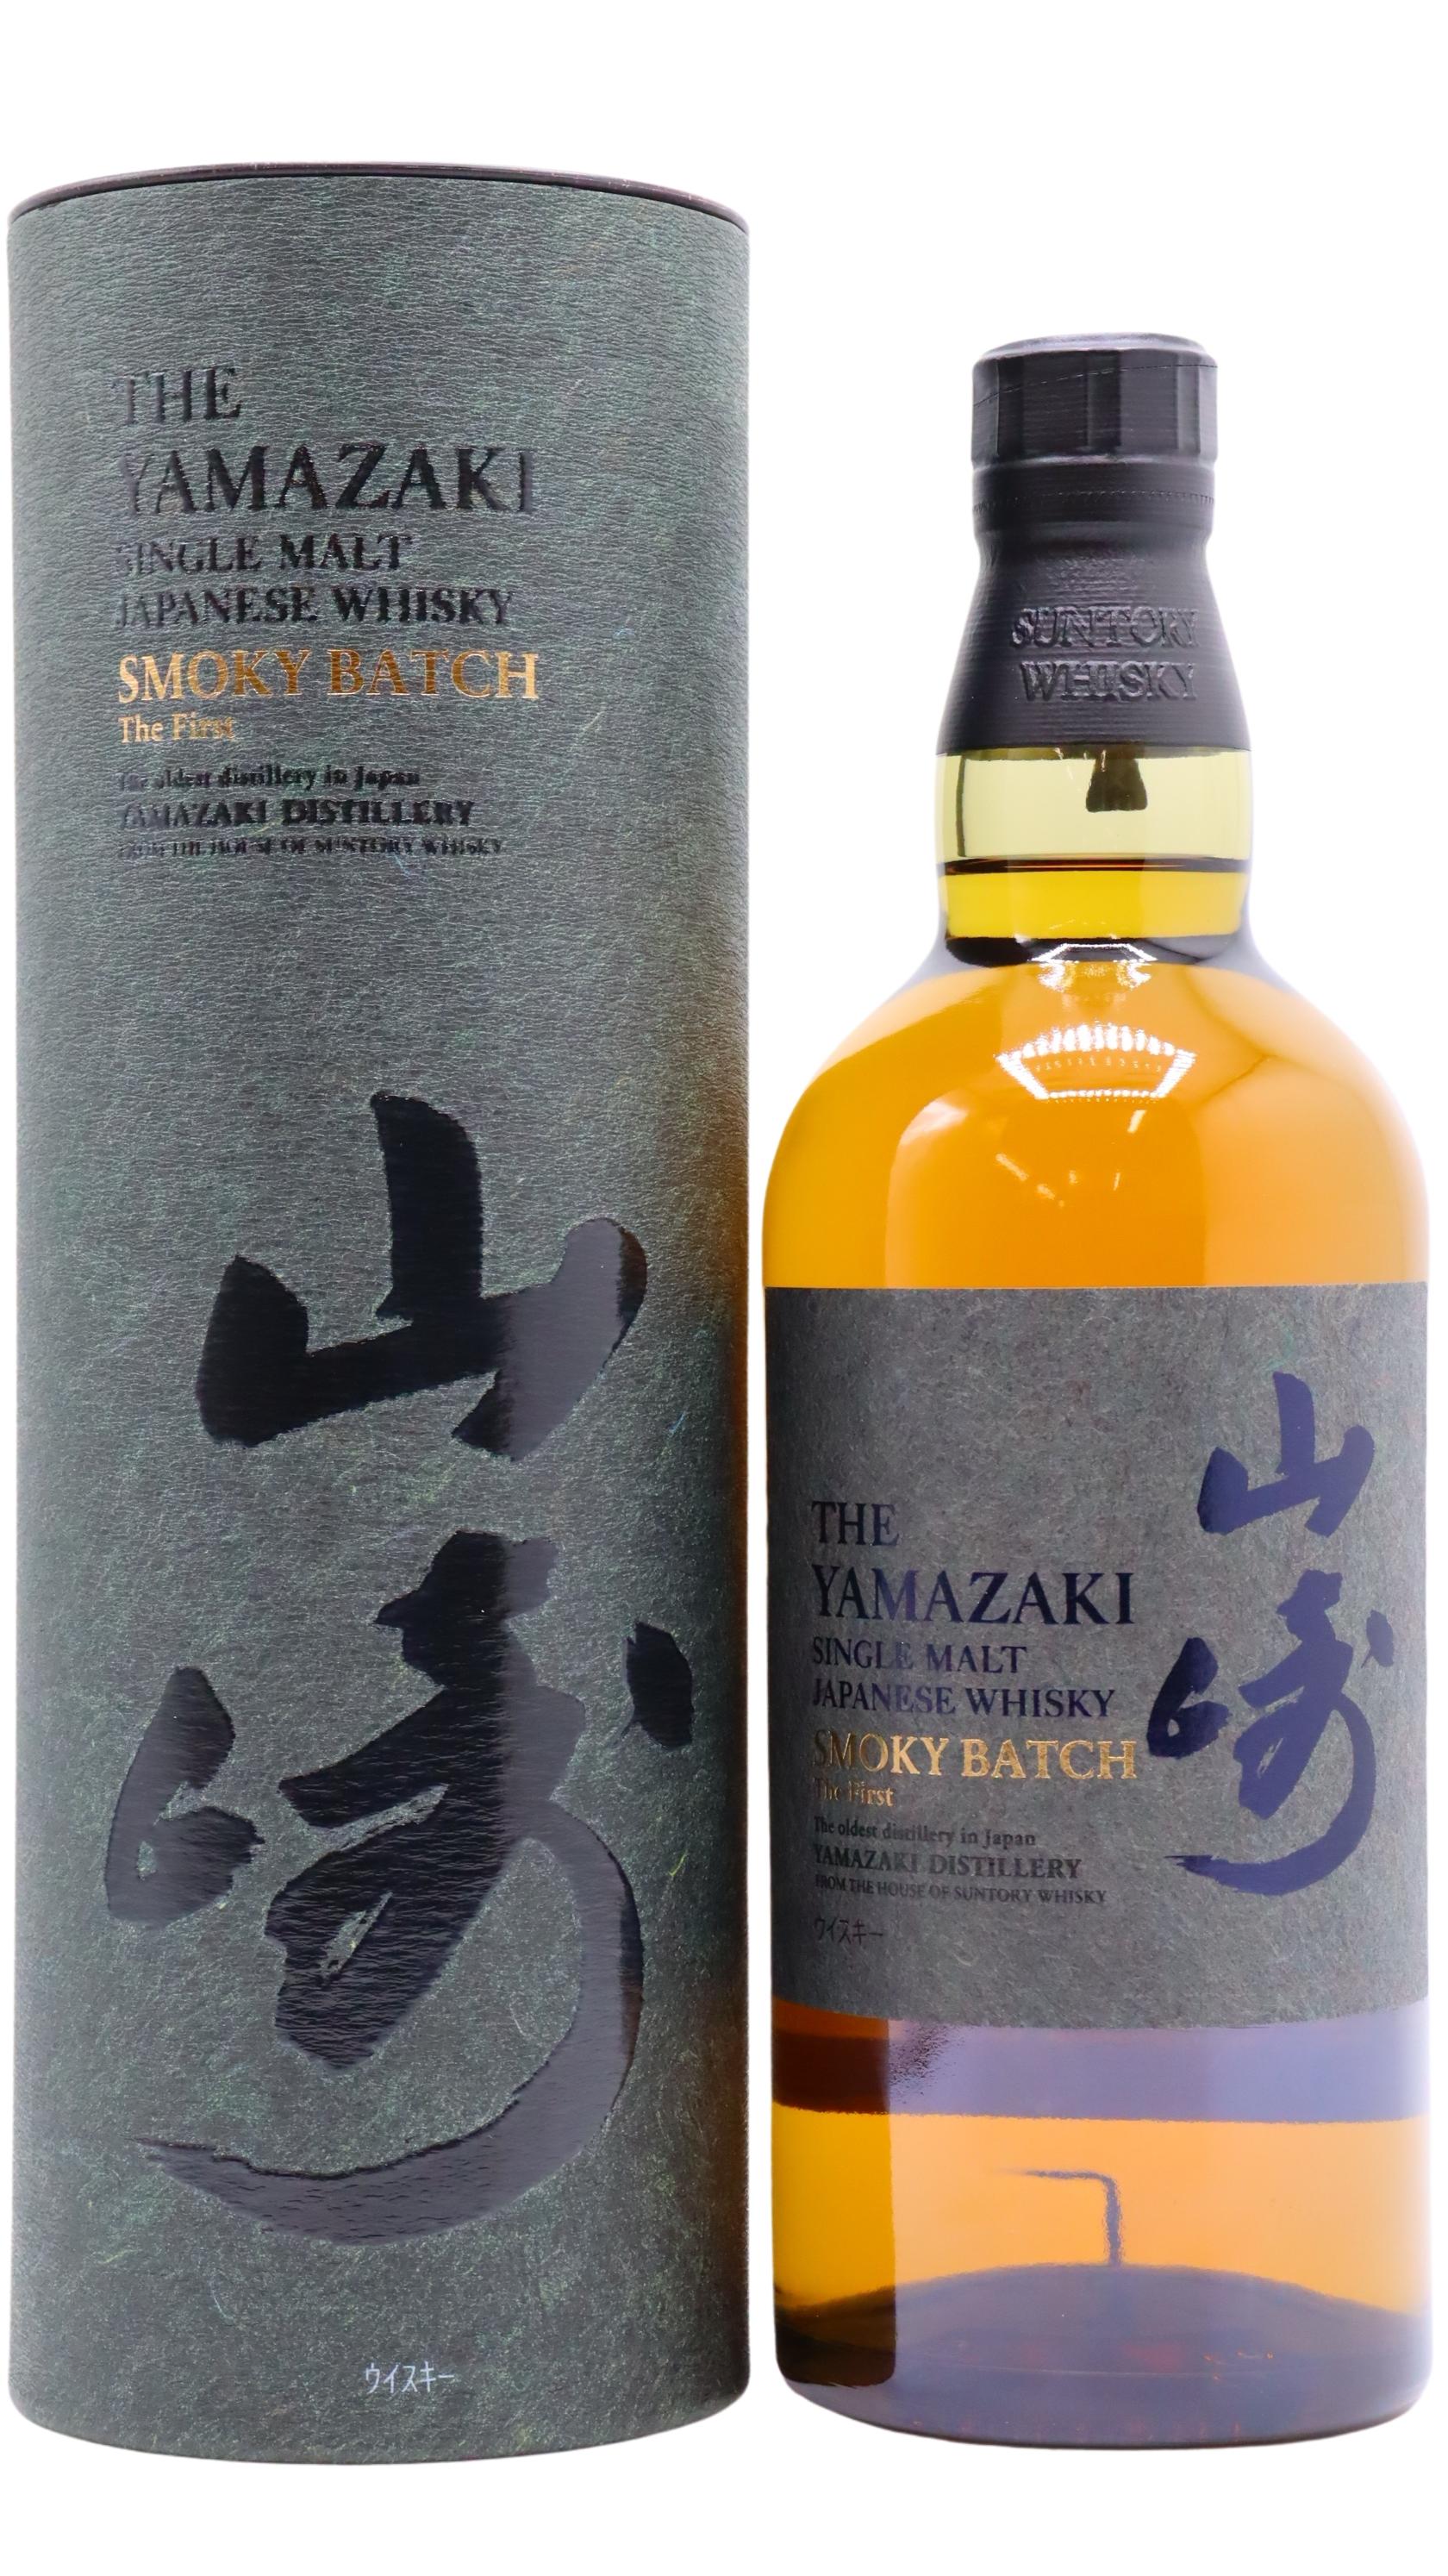 Yamazaki - Smoky Batch - The First Whisky